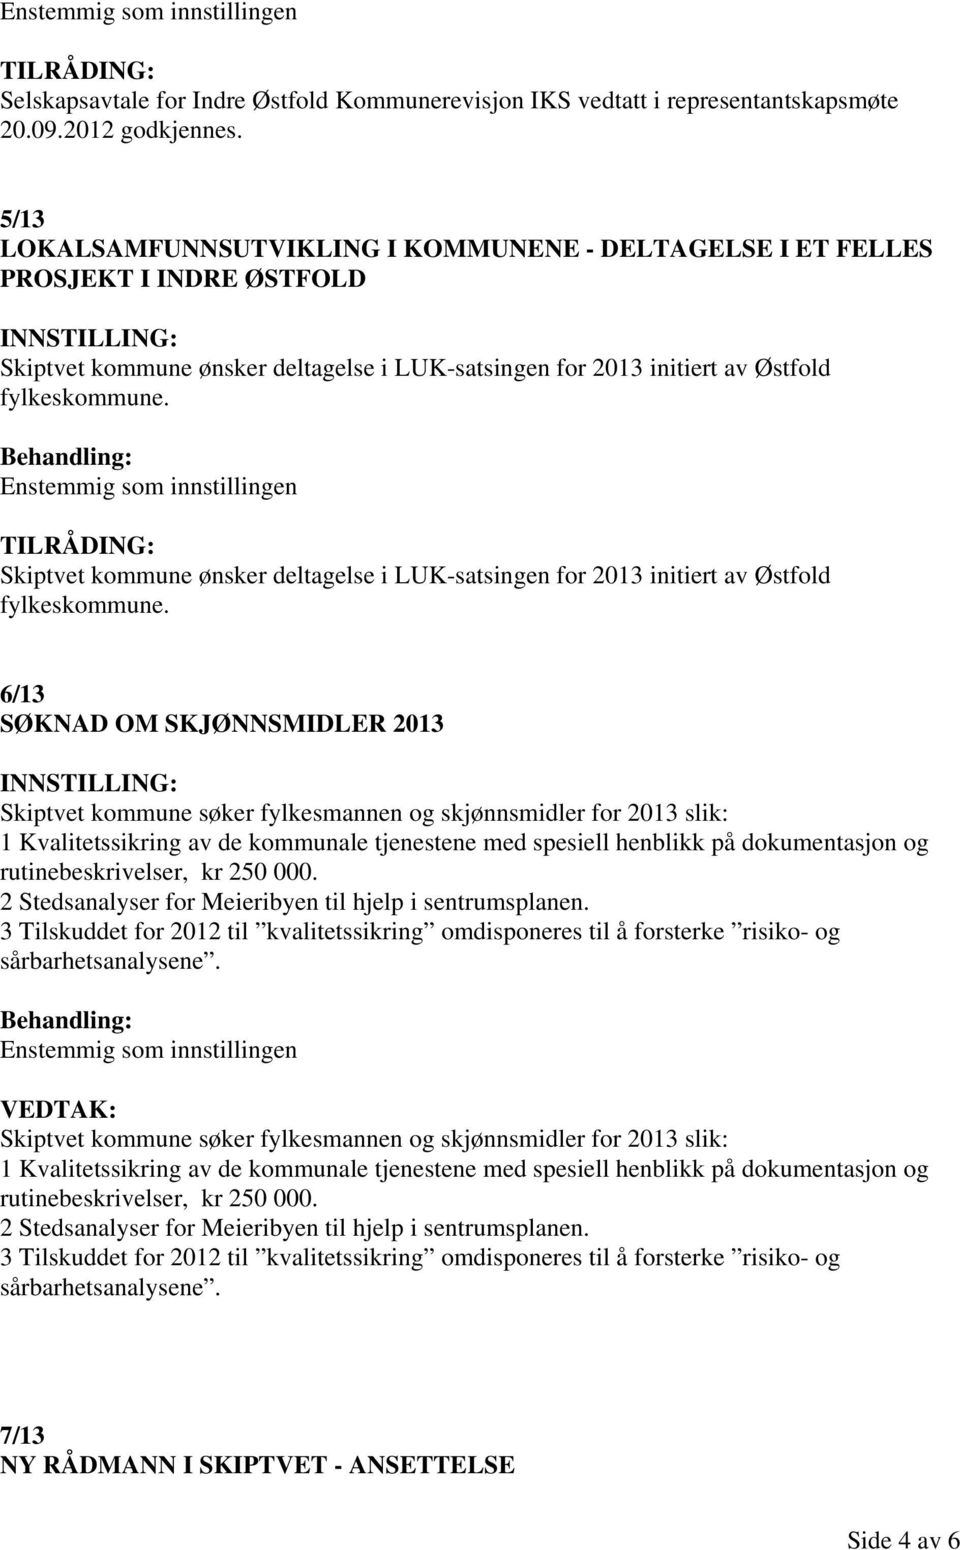 Skiptvet kommune ønsker deltagelse i LUK-satsingen for 2013 initiert av Østfold fylkeskommune.